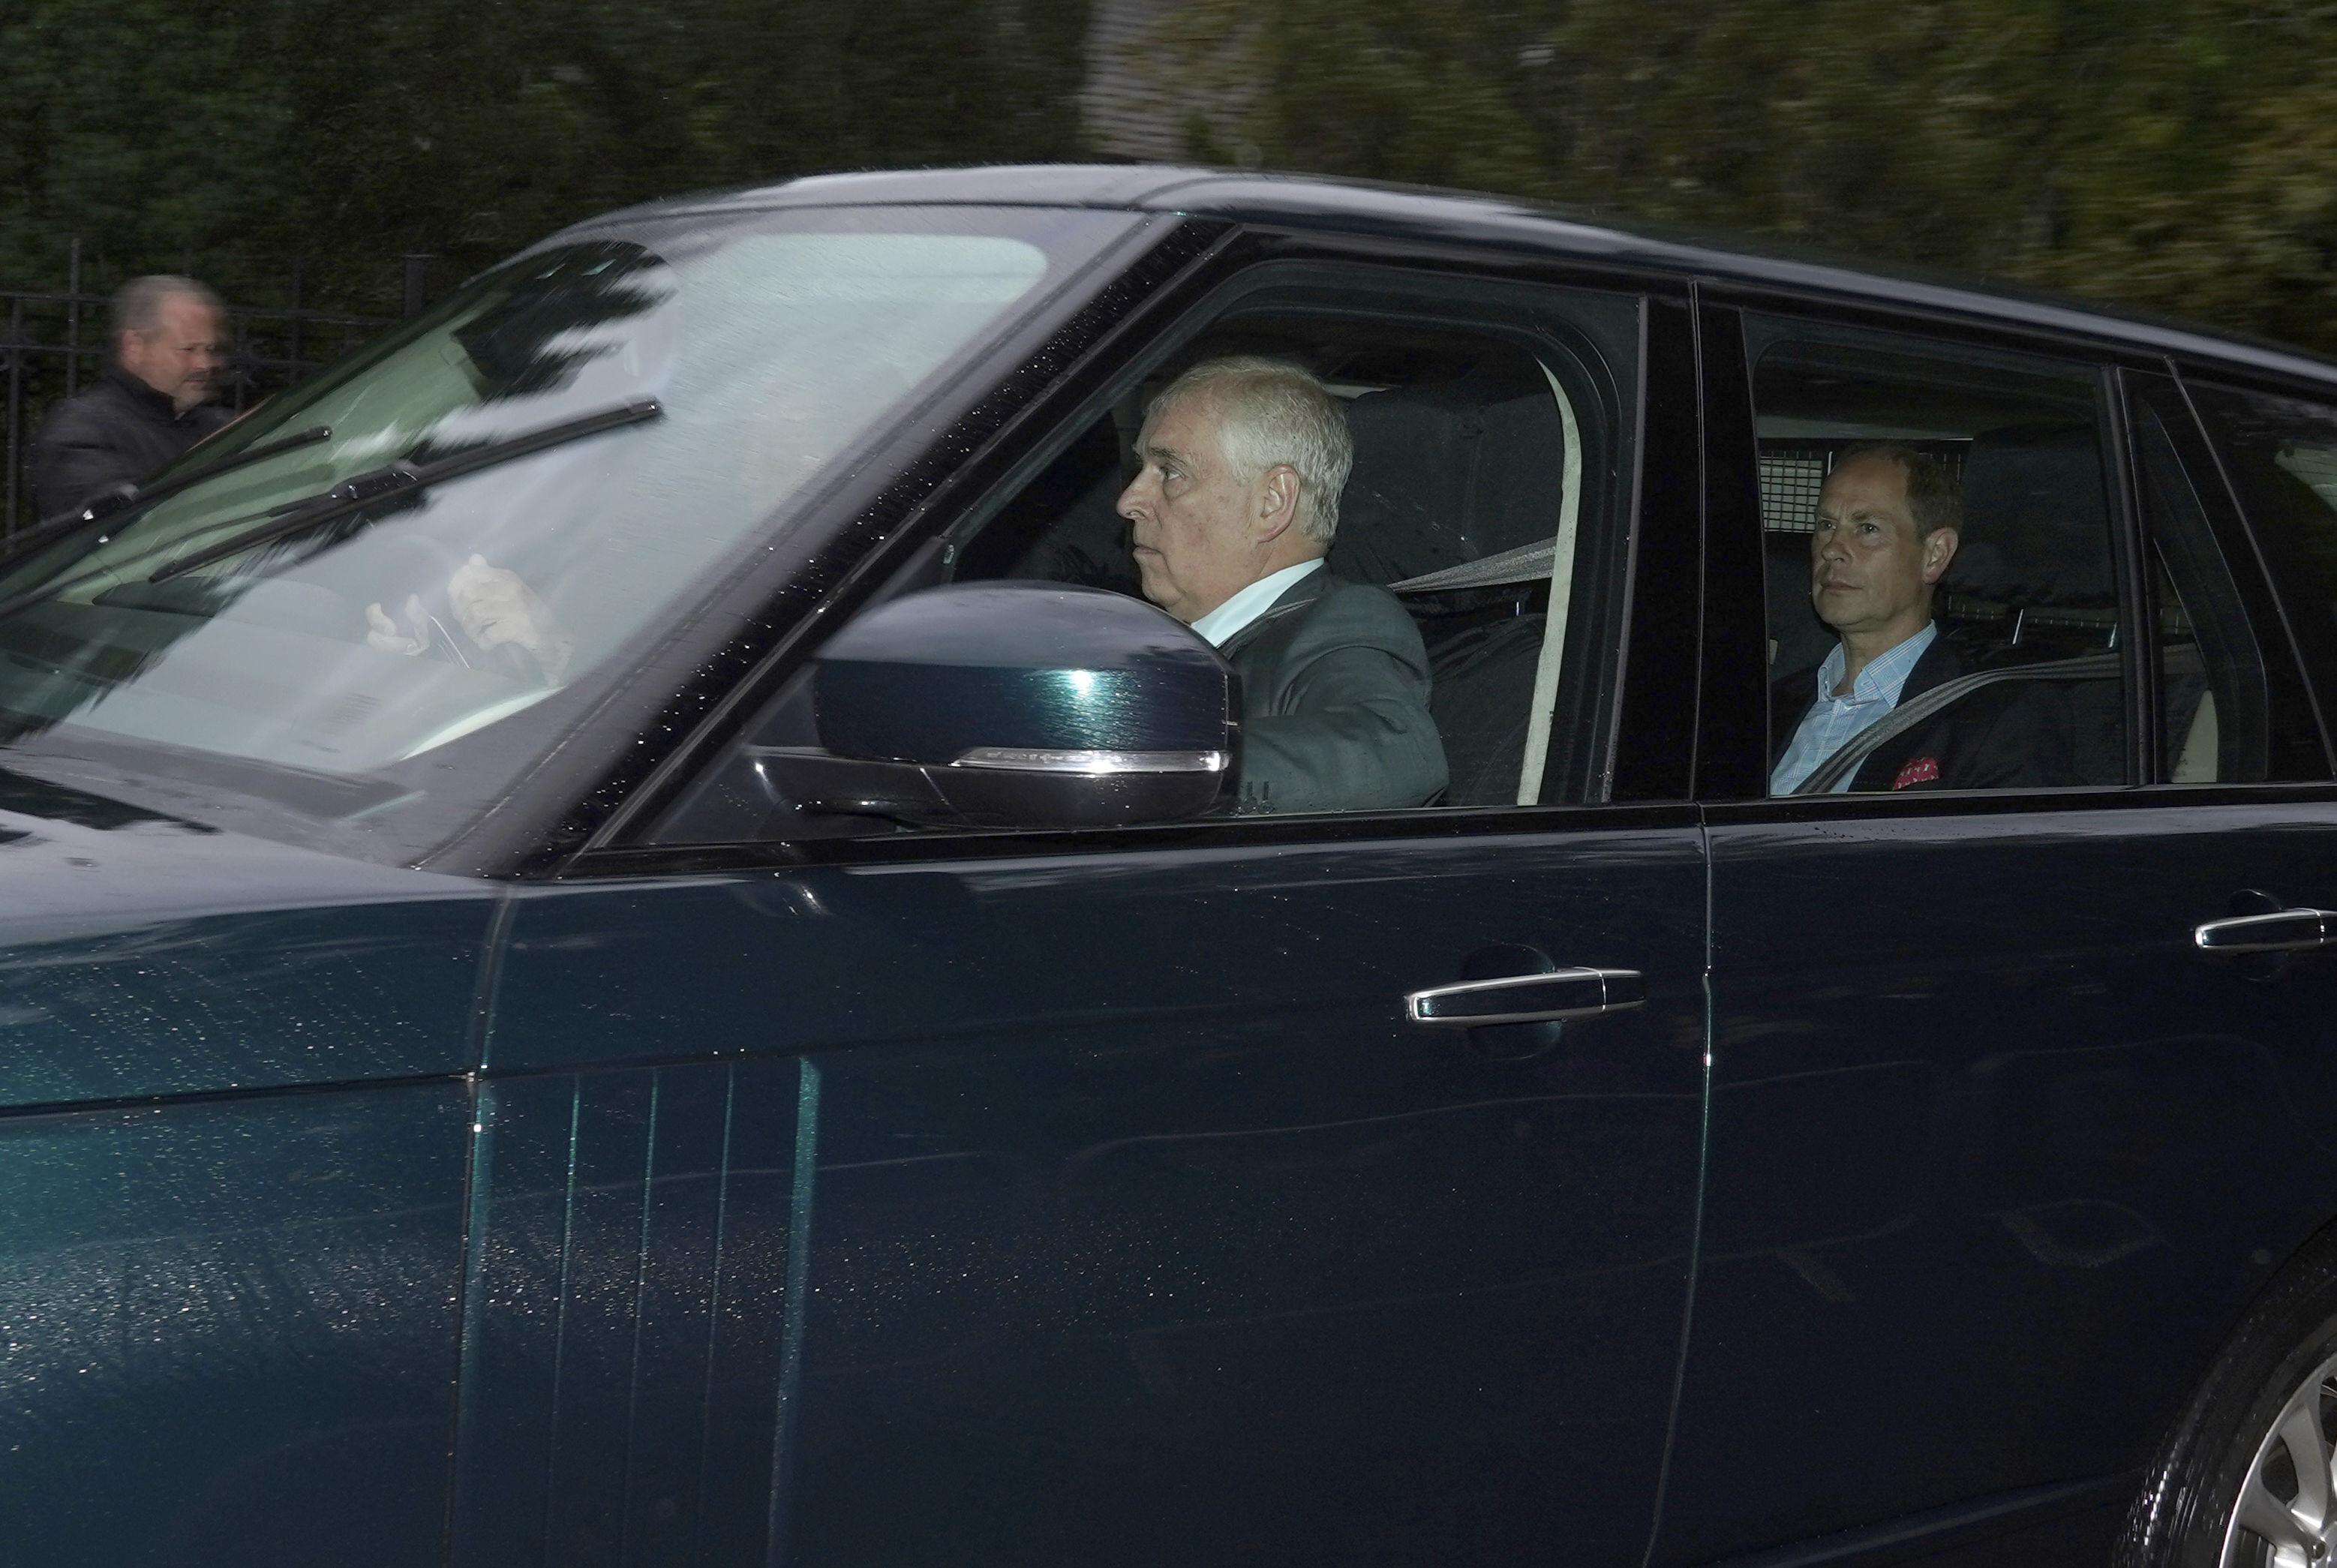 El duque de Cambridge, segundo en la línea de sucesión al trono británico, llegó en auto junto a los hijos de la monarca Andrés y Eduardo (Andrew Milligan/PA via AP)